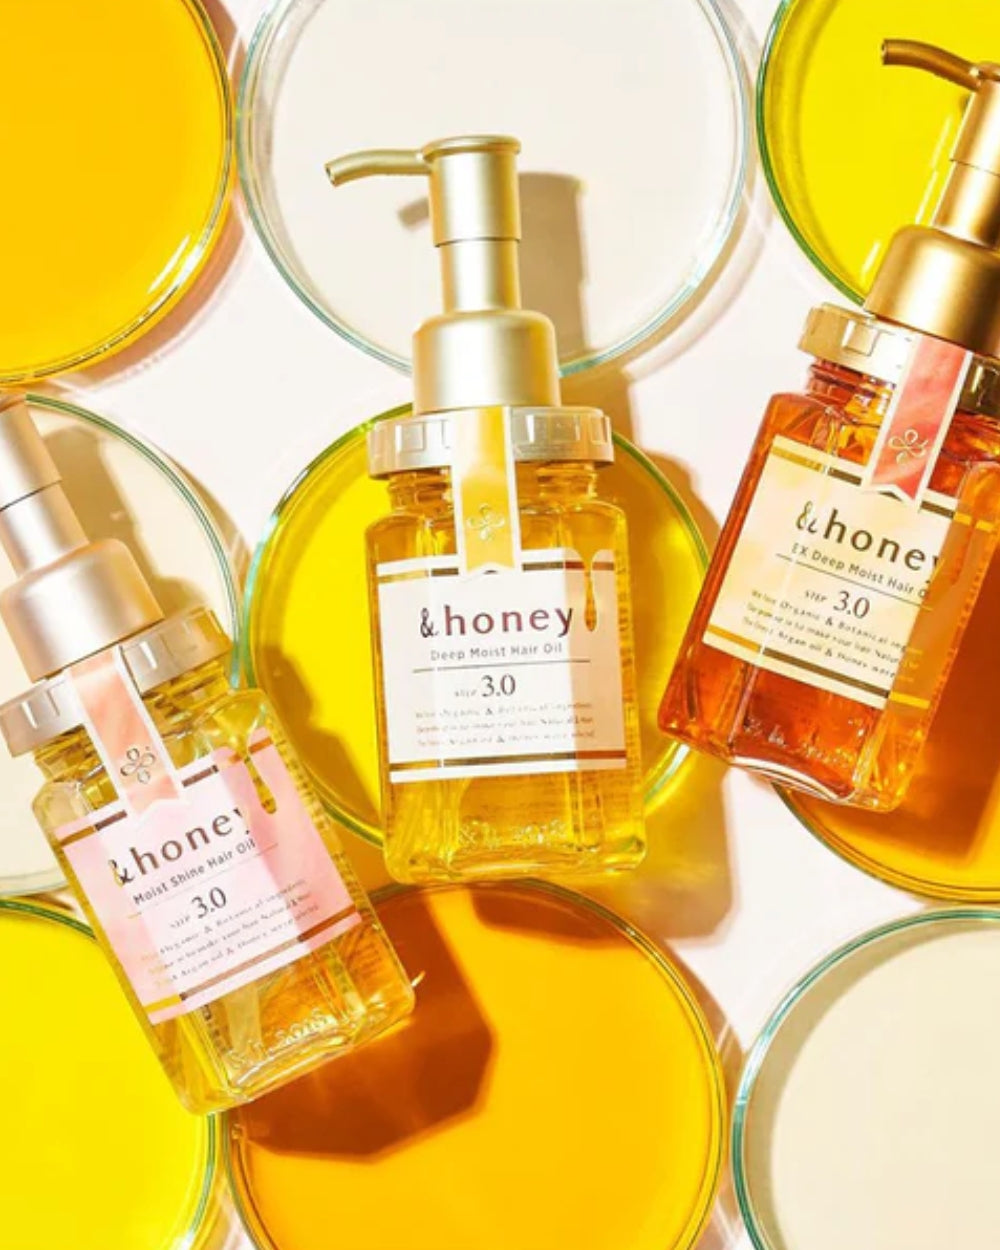 &honey - Moist Shine Hair Oil 3.0